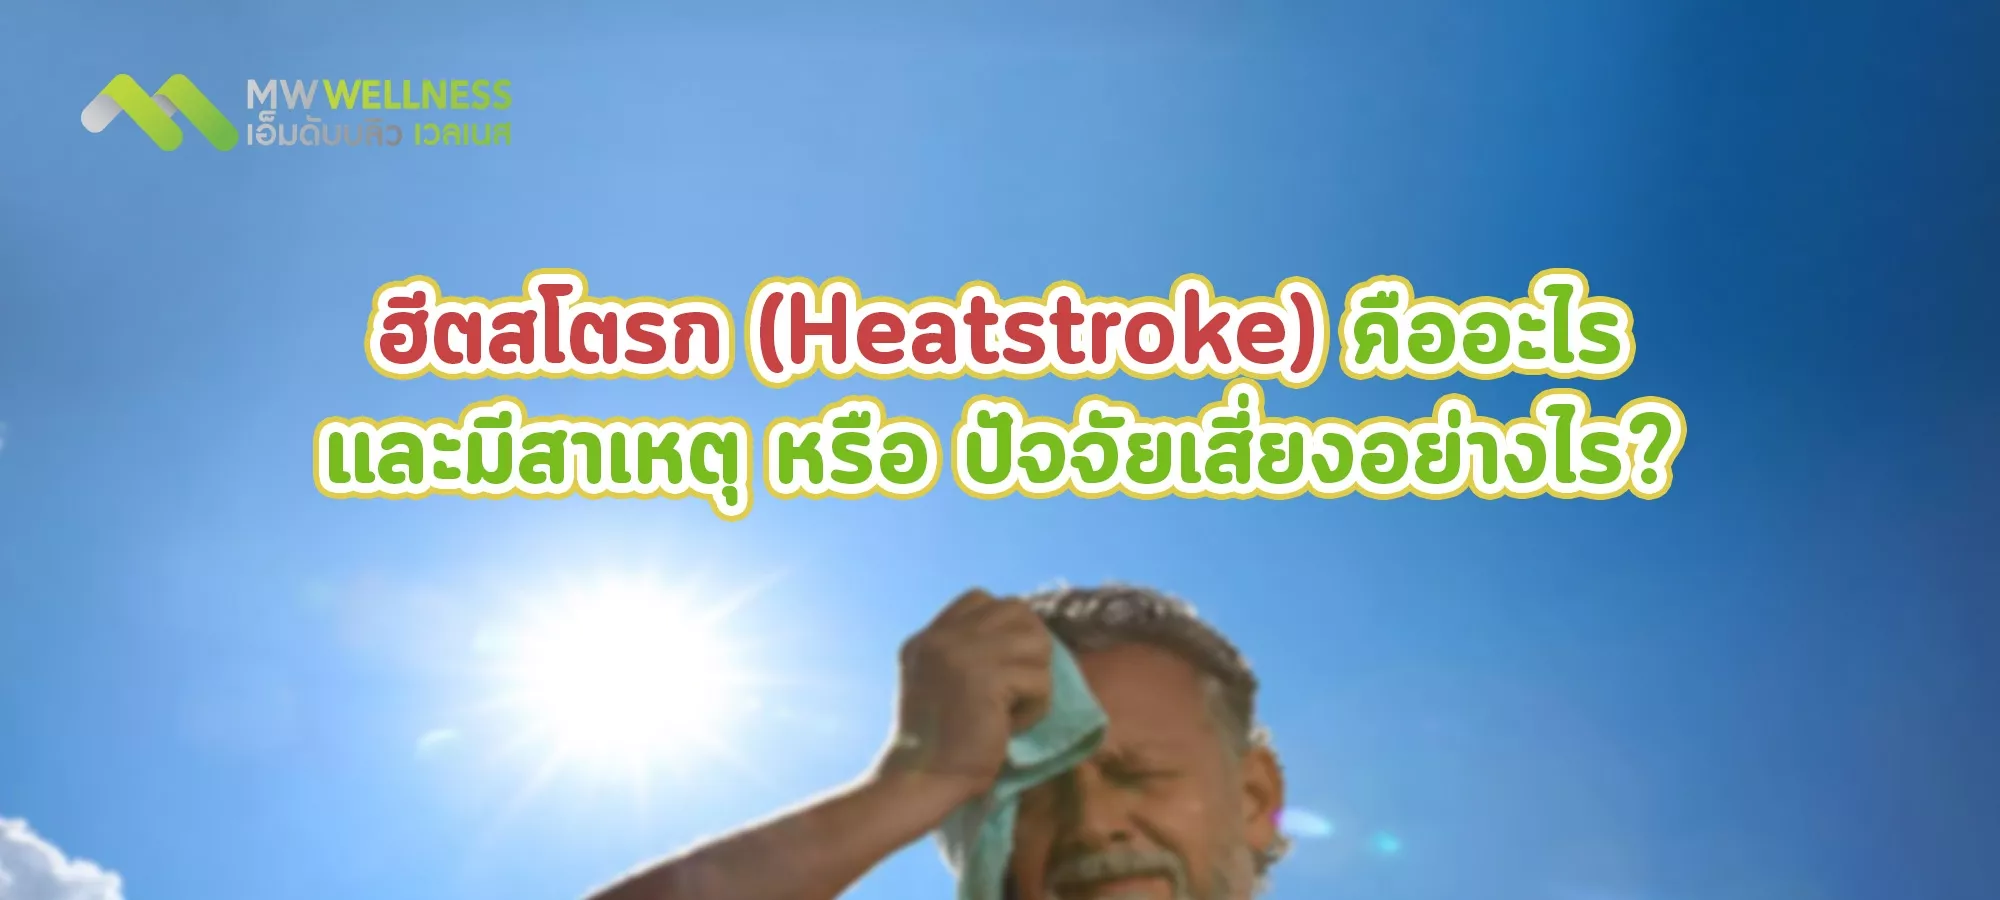 ฮีตสโตรก (Heatstroke) คืออะไร และมีสาเหตุ หรือ ปัจจัยเสี่ยงอย่างไร?